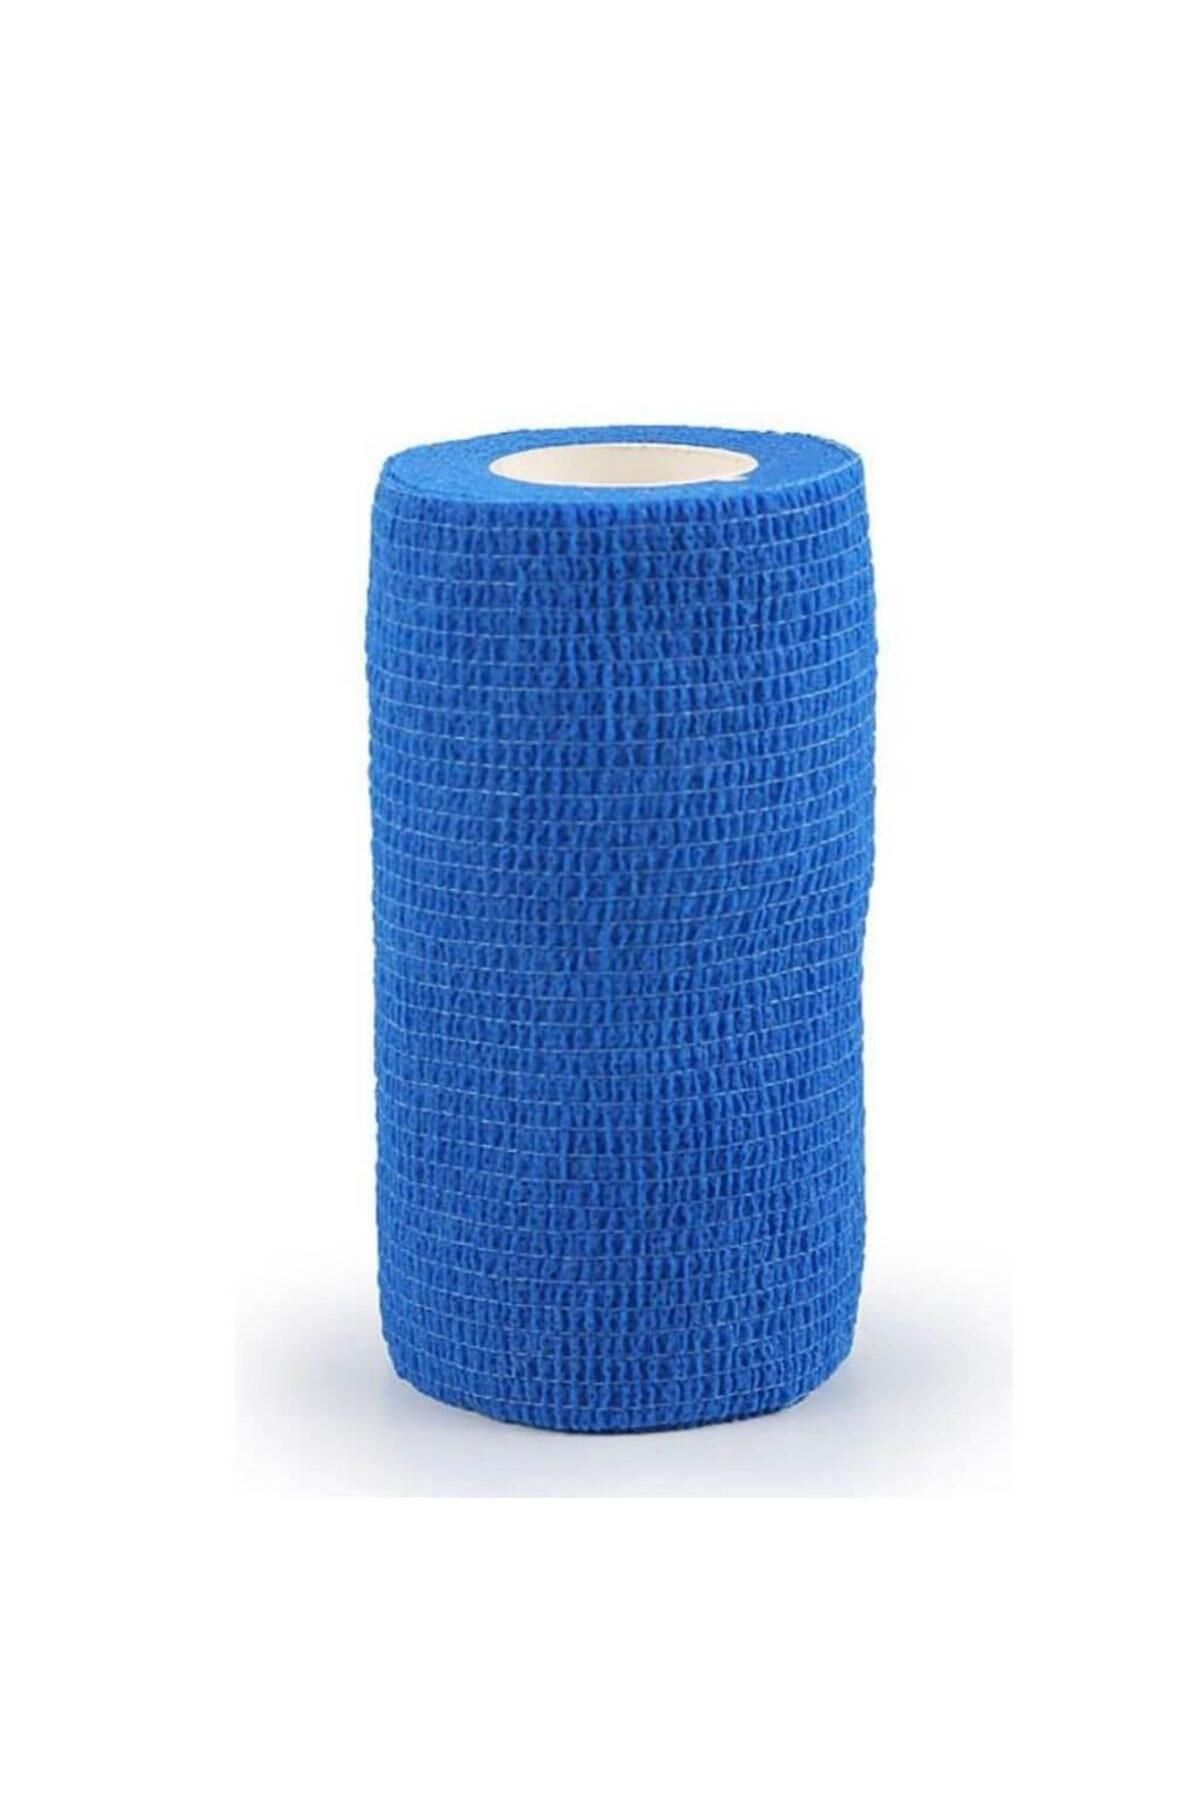 sayberk Kendinden Yapışkanlı Elastik Bandaj 10 x 4,5 cm Mavi Renk